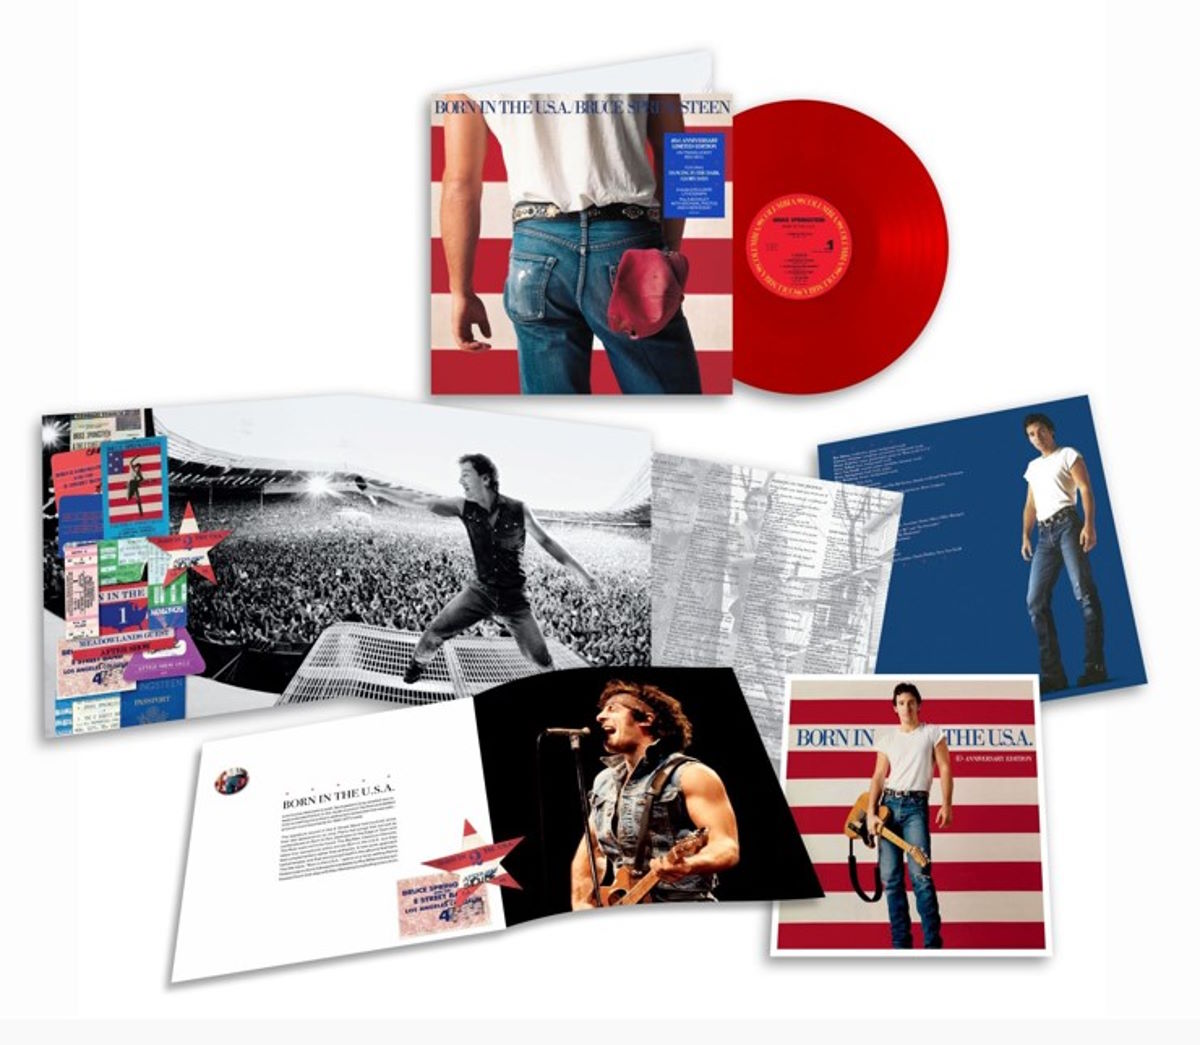 Bruce Springsteen: disponibile Born In The U.S.A., il Vinile, in edizione speciale, con cui Sony Music celebra il 40° anniversario dell’album capolavoro del Boss